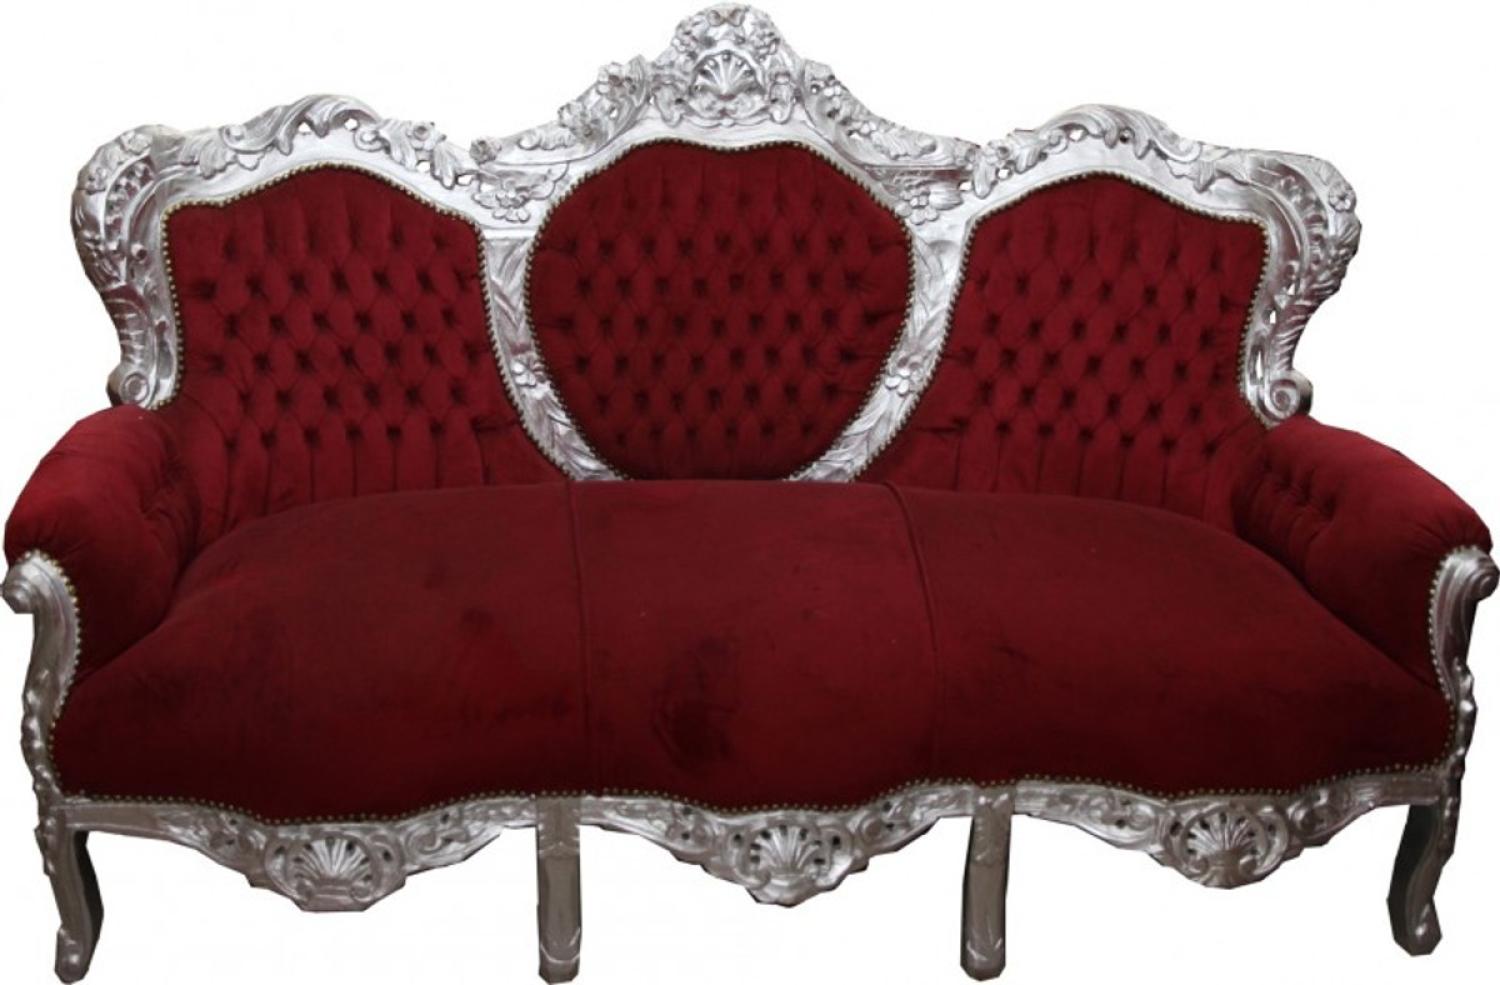 Barock Sofa Garnitur King Bordeaux/Silber - Möbel Antik Stil Bild 1